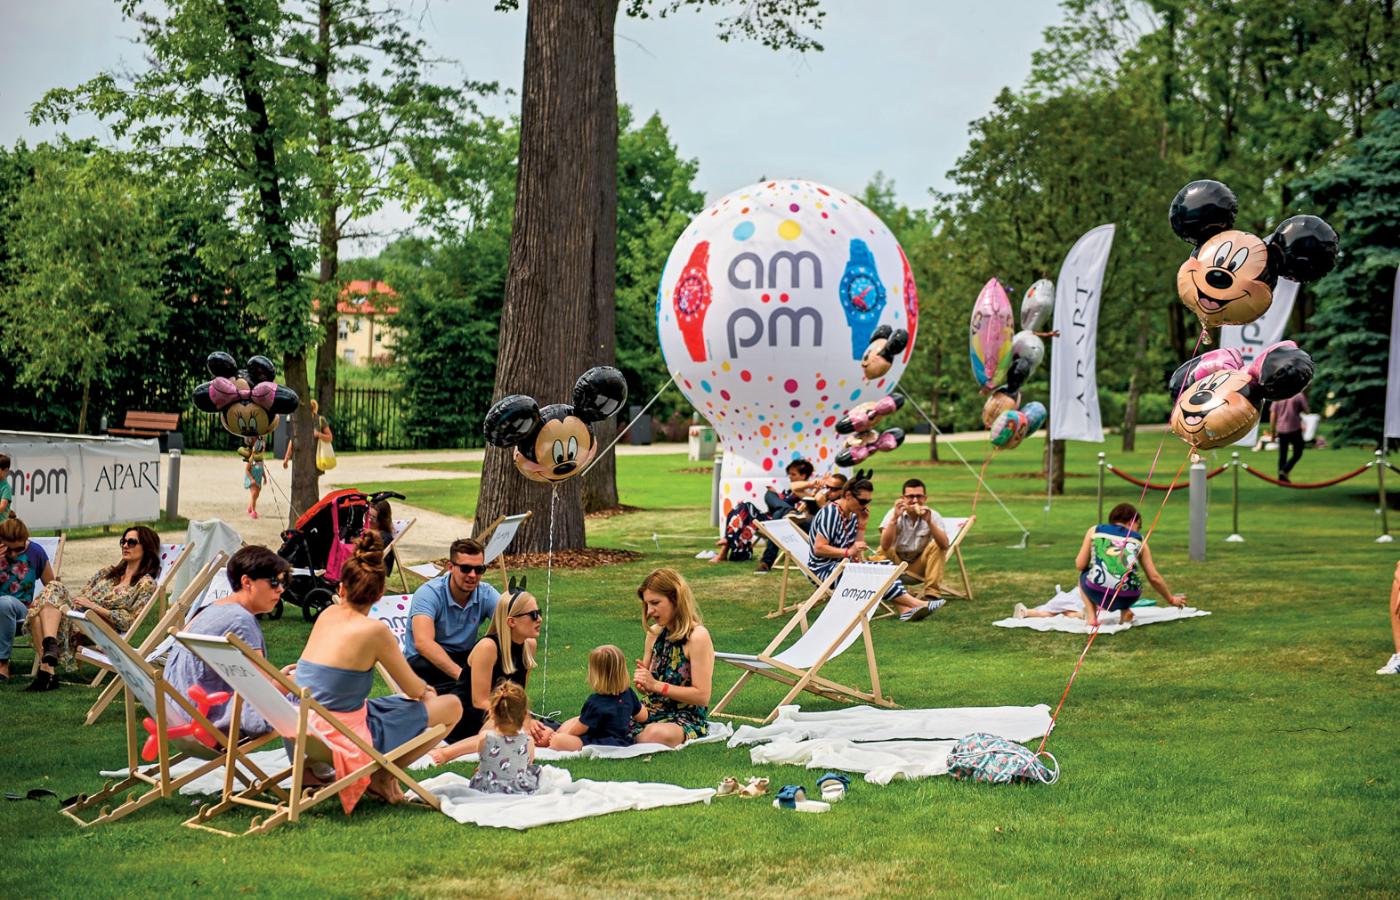 Jakość życia mieszkańców miast zależy w największym stopniu od nich samych i ich władz lokalnych. Na fot. piknik w Warszawie.